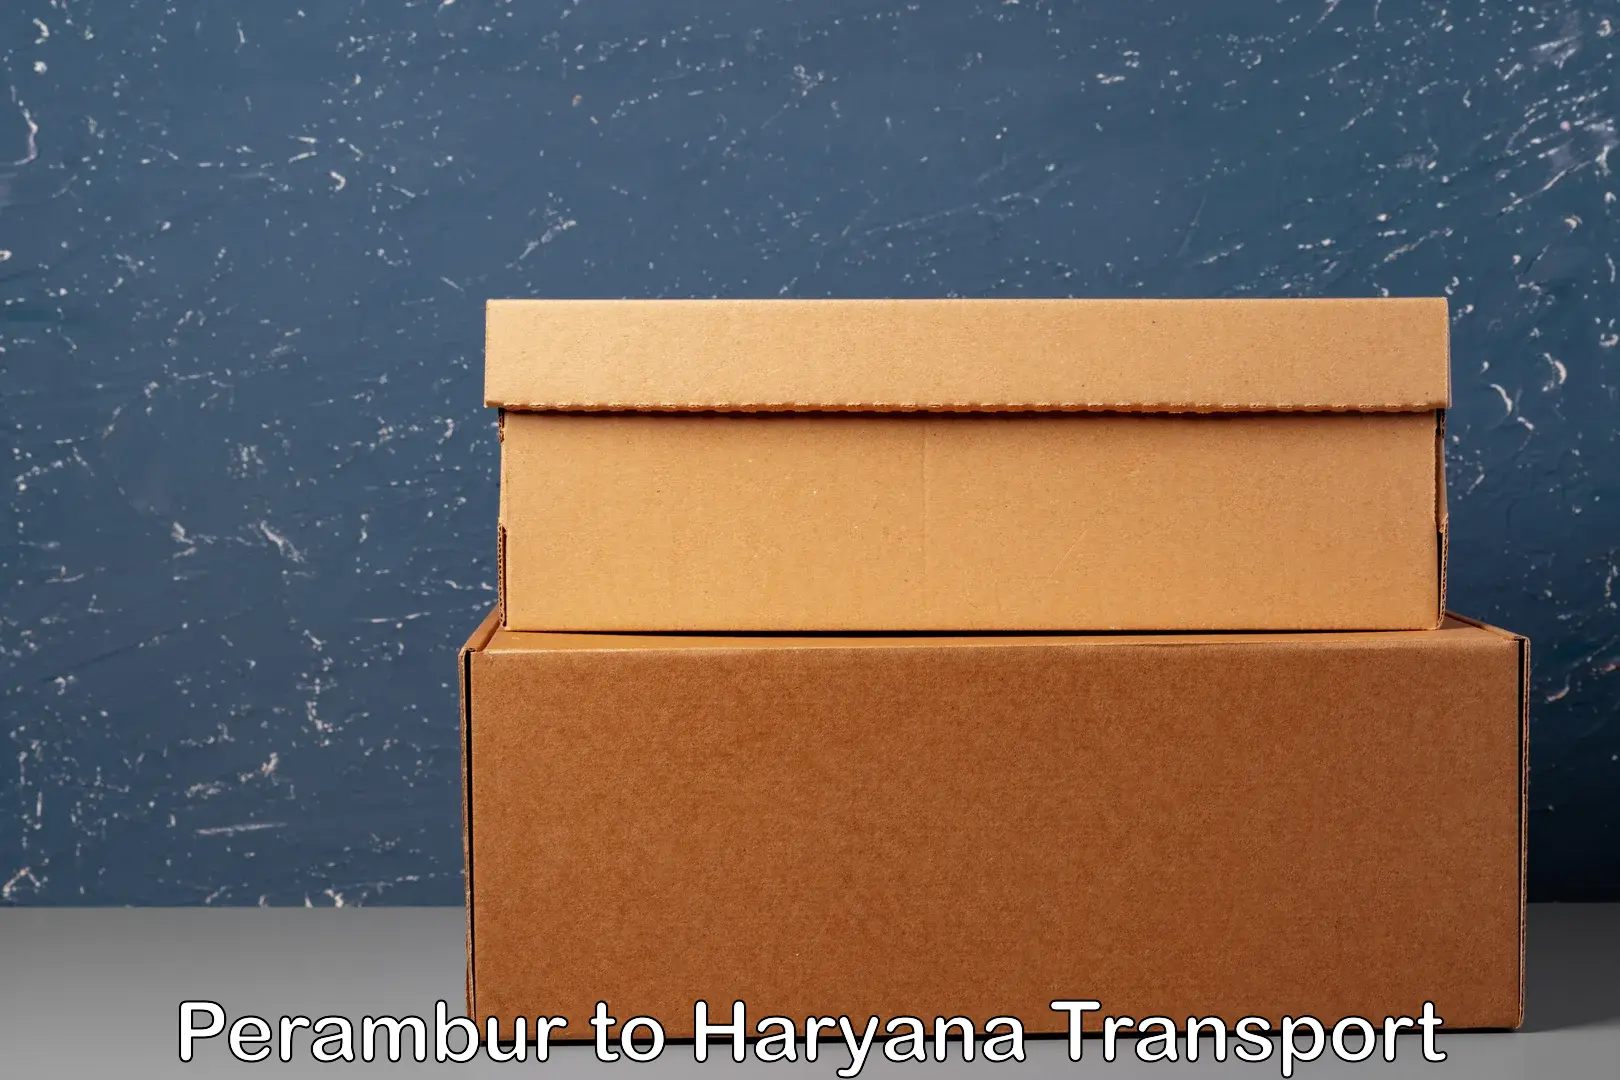 Container transportation services Perambur to Gurgaon